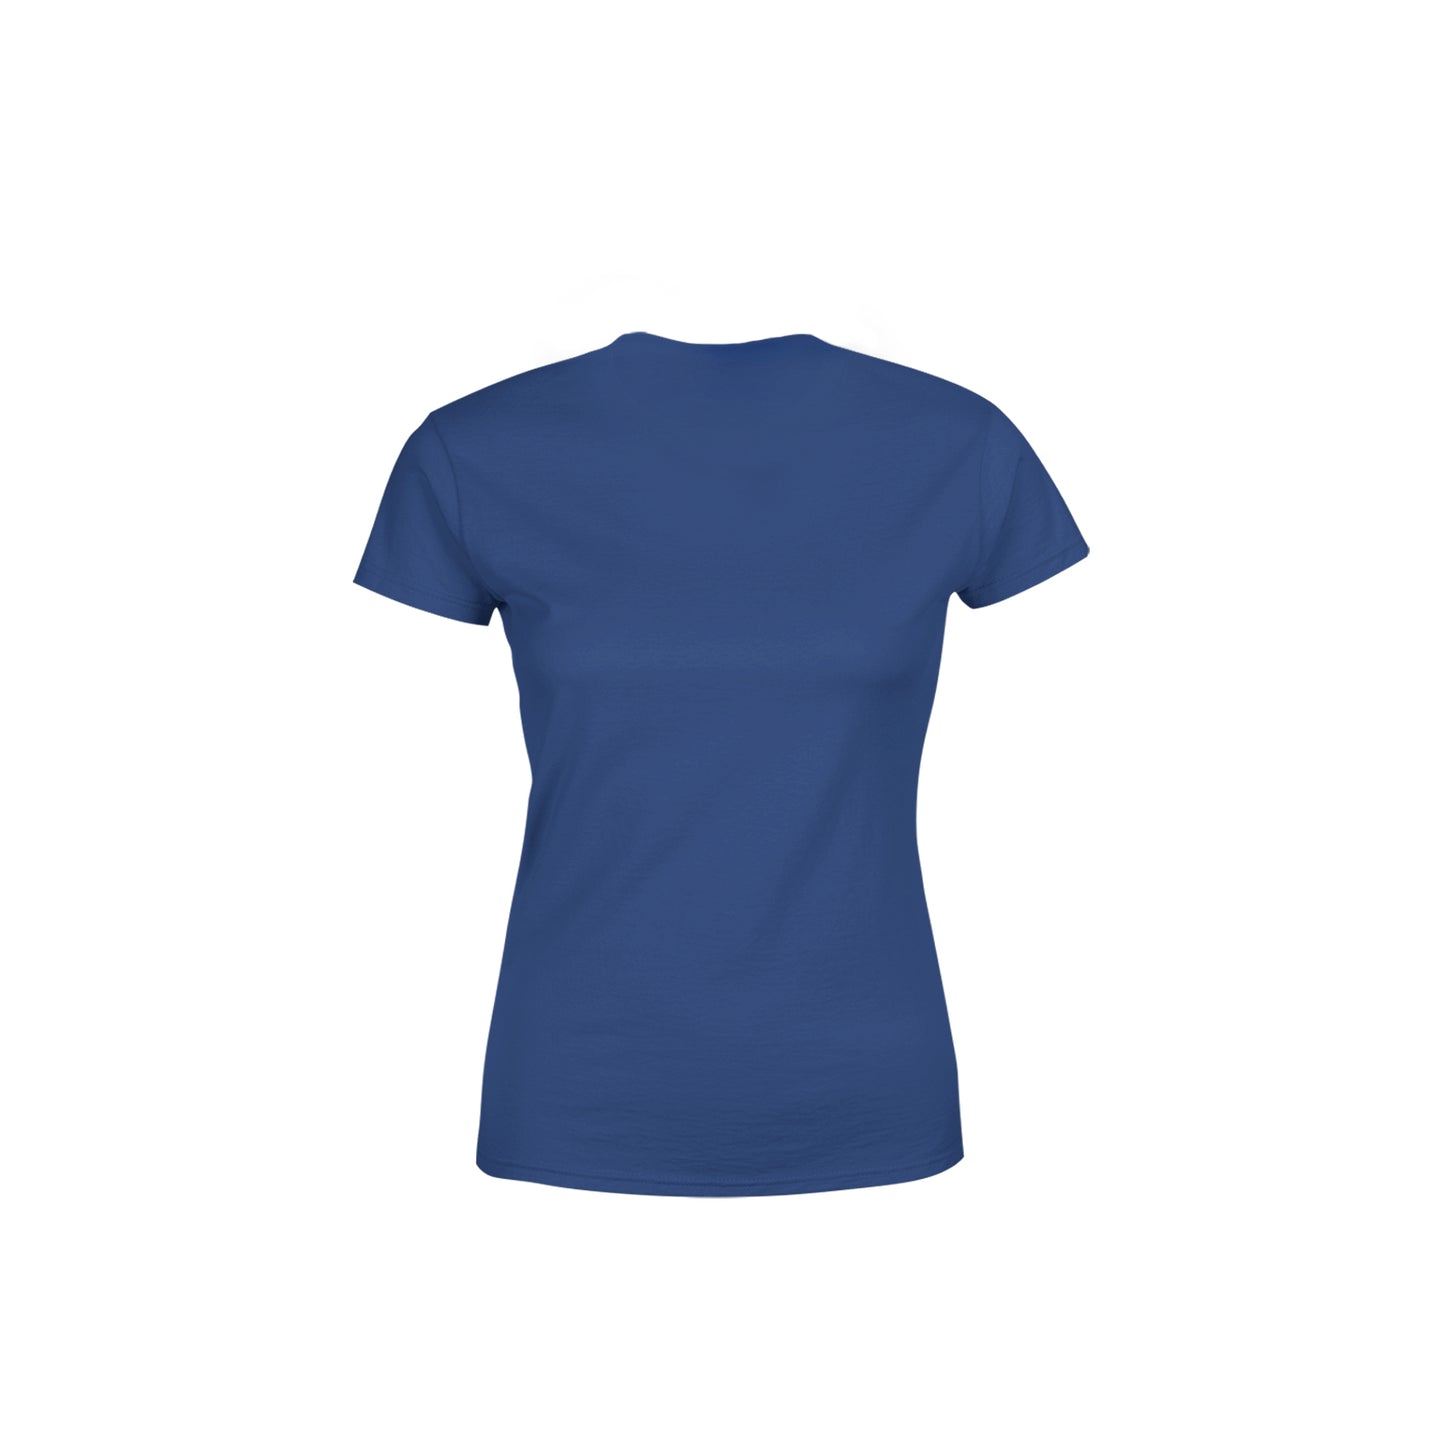 15 Number Women's T-Shirt (Navy Blue)